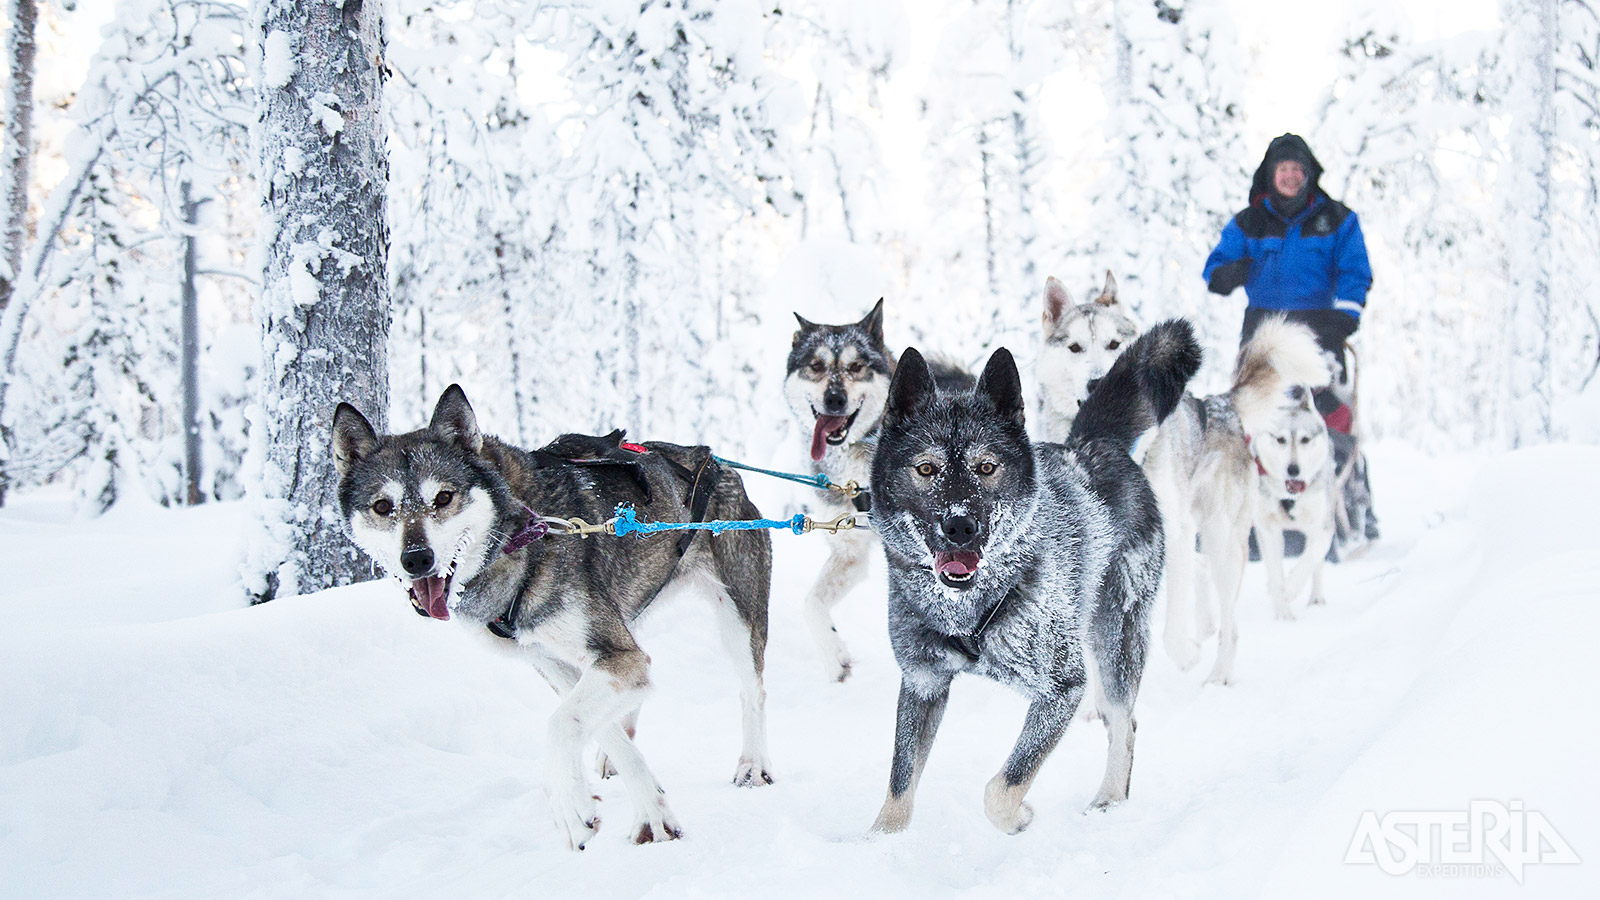 Op safari met husky’s, een absolute must-do bij een bezoek aan Lapland